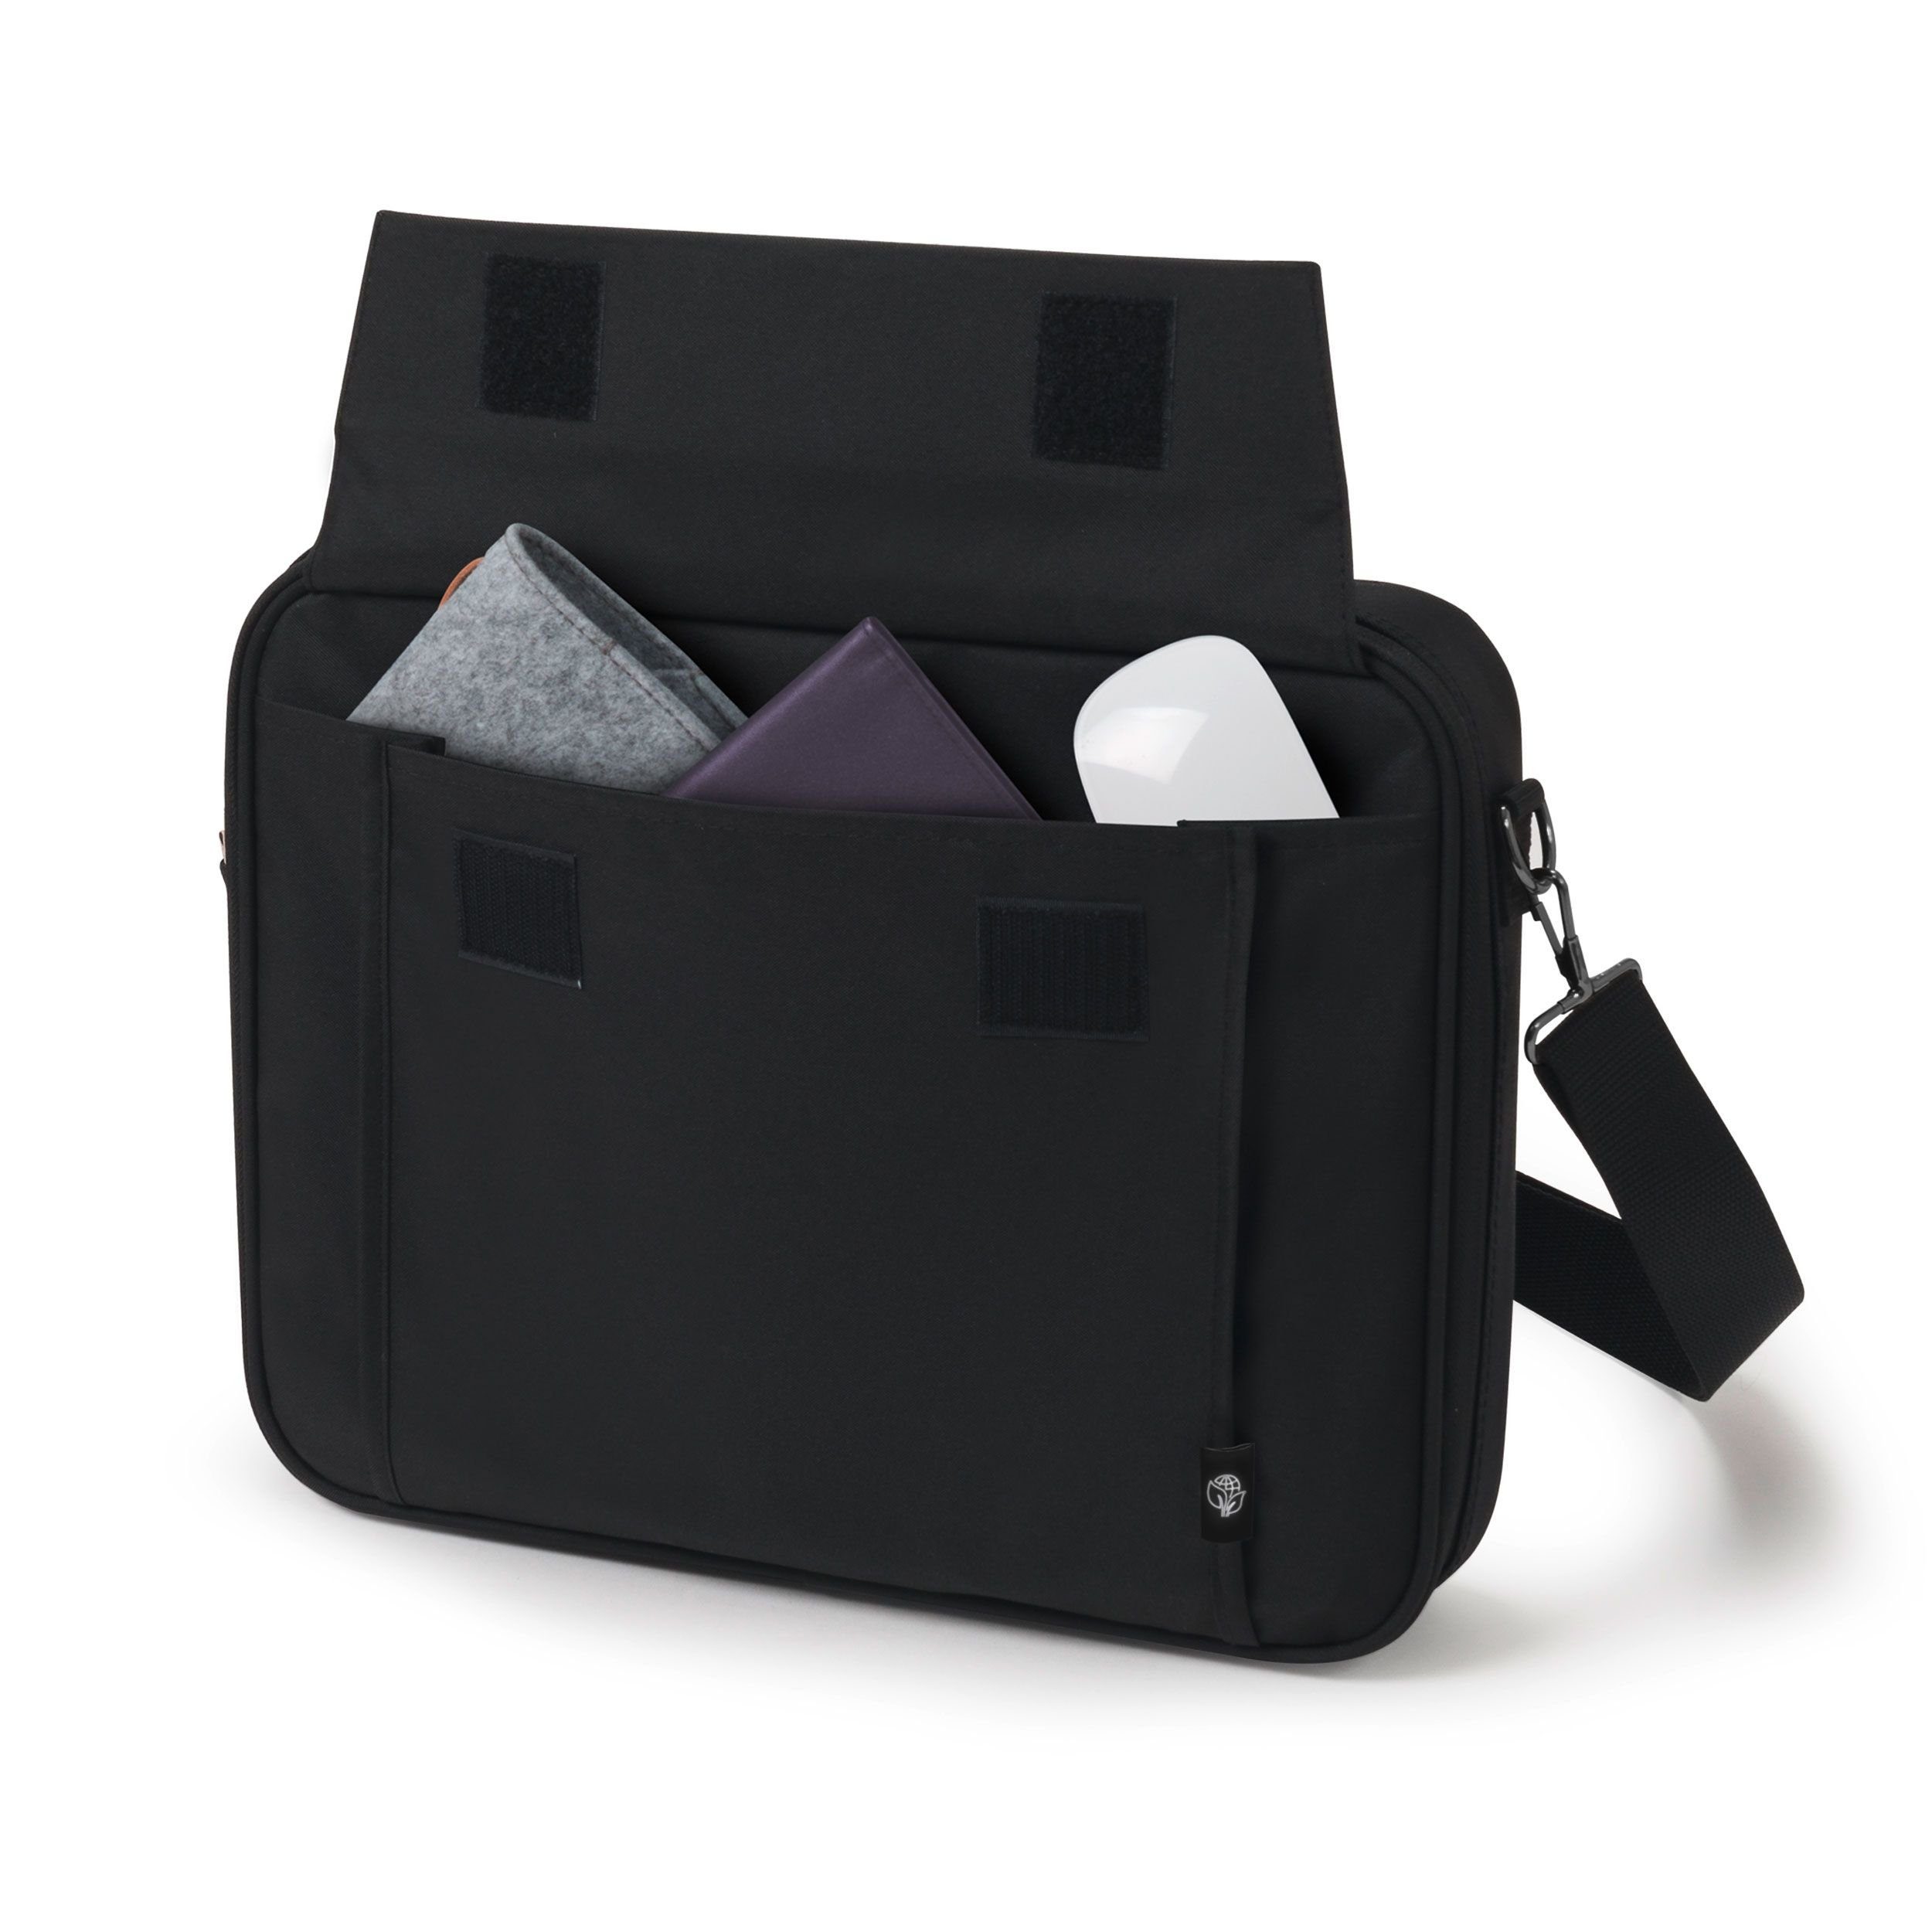 DICOTA Laptoptasche Eco Multi BASE, Gepolstertes Notebookfach -  Metalldrahtrahmen für zusätzlichen Schutz